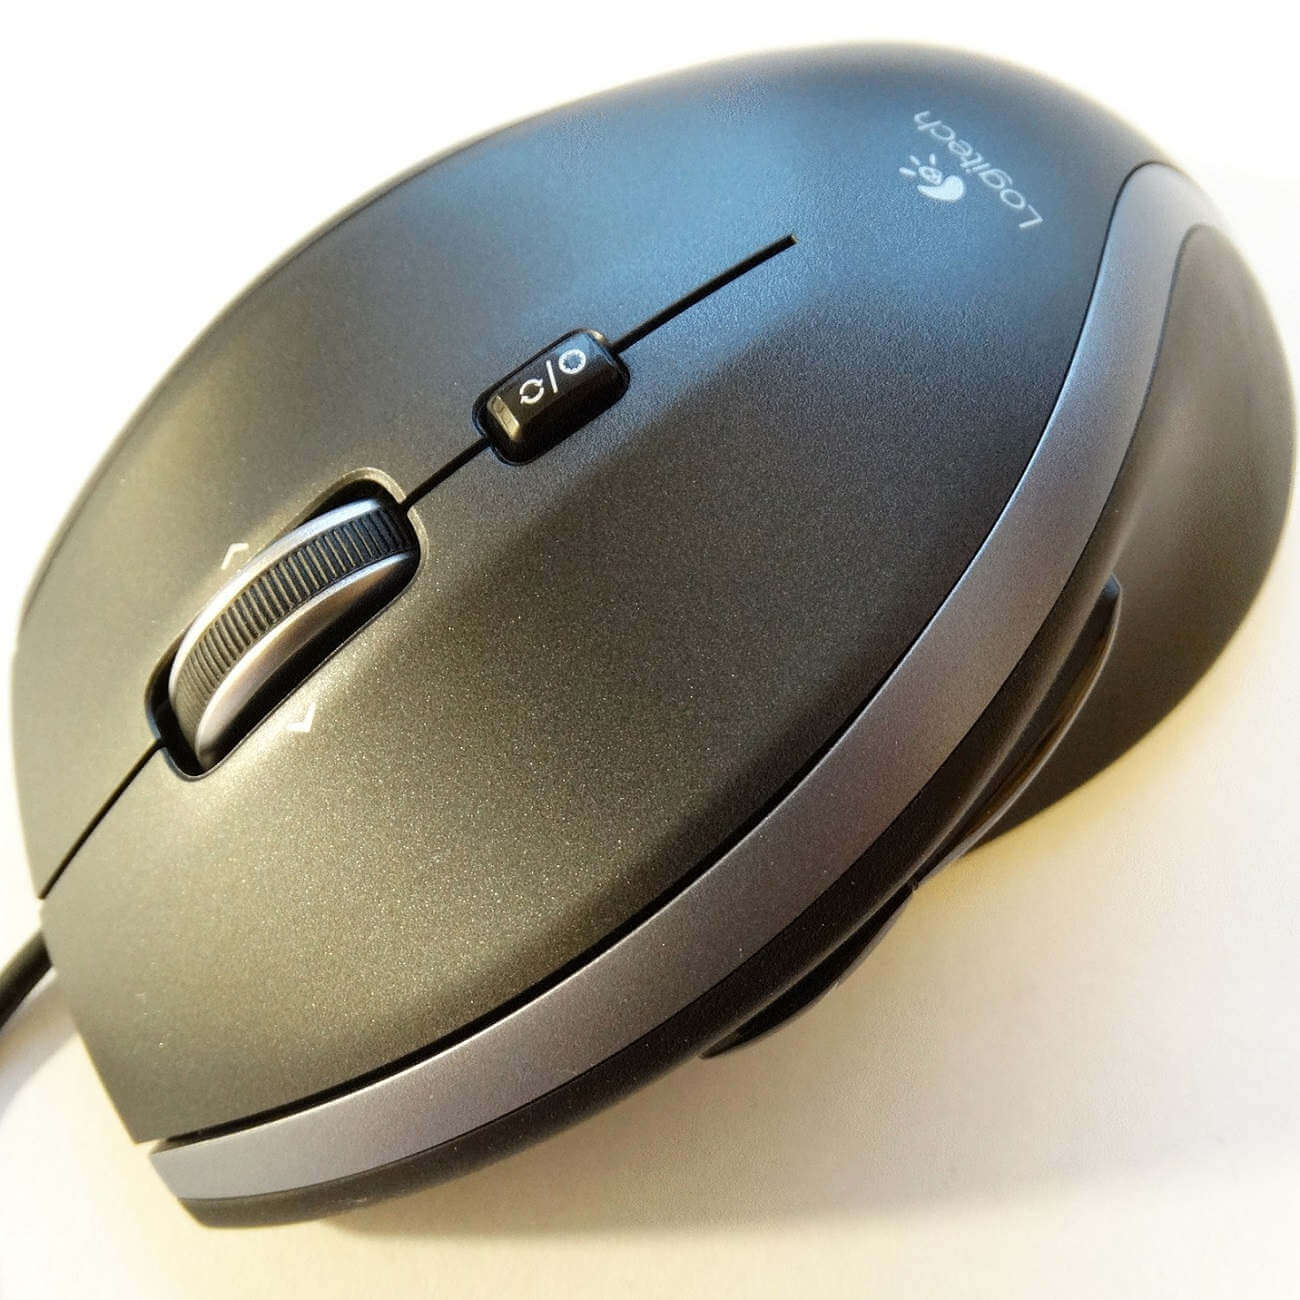 Logitech Options mouse cursor problems